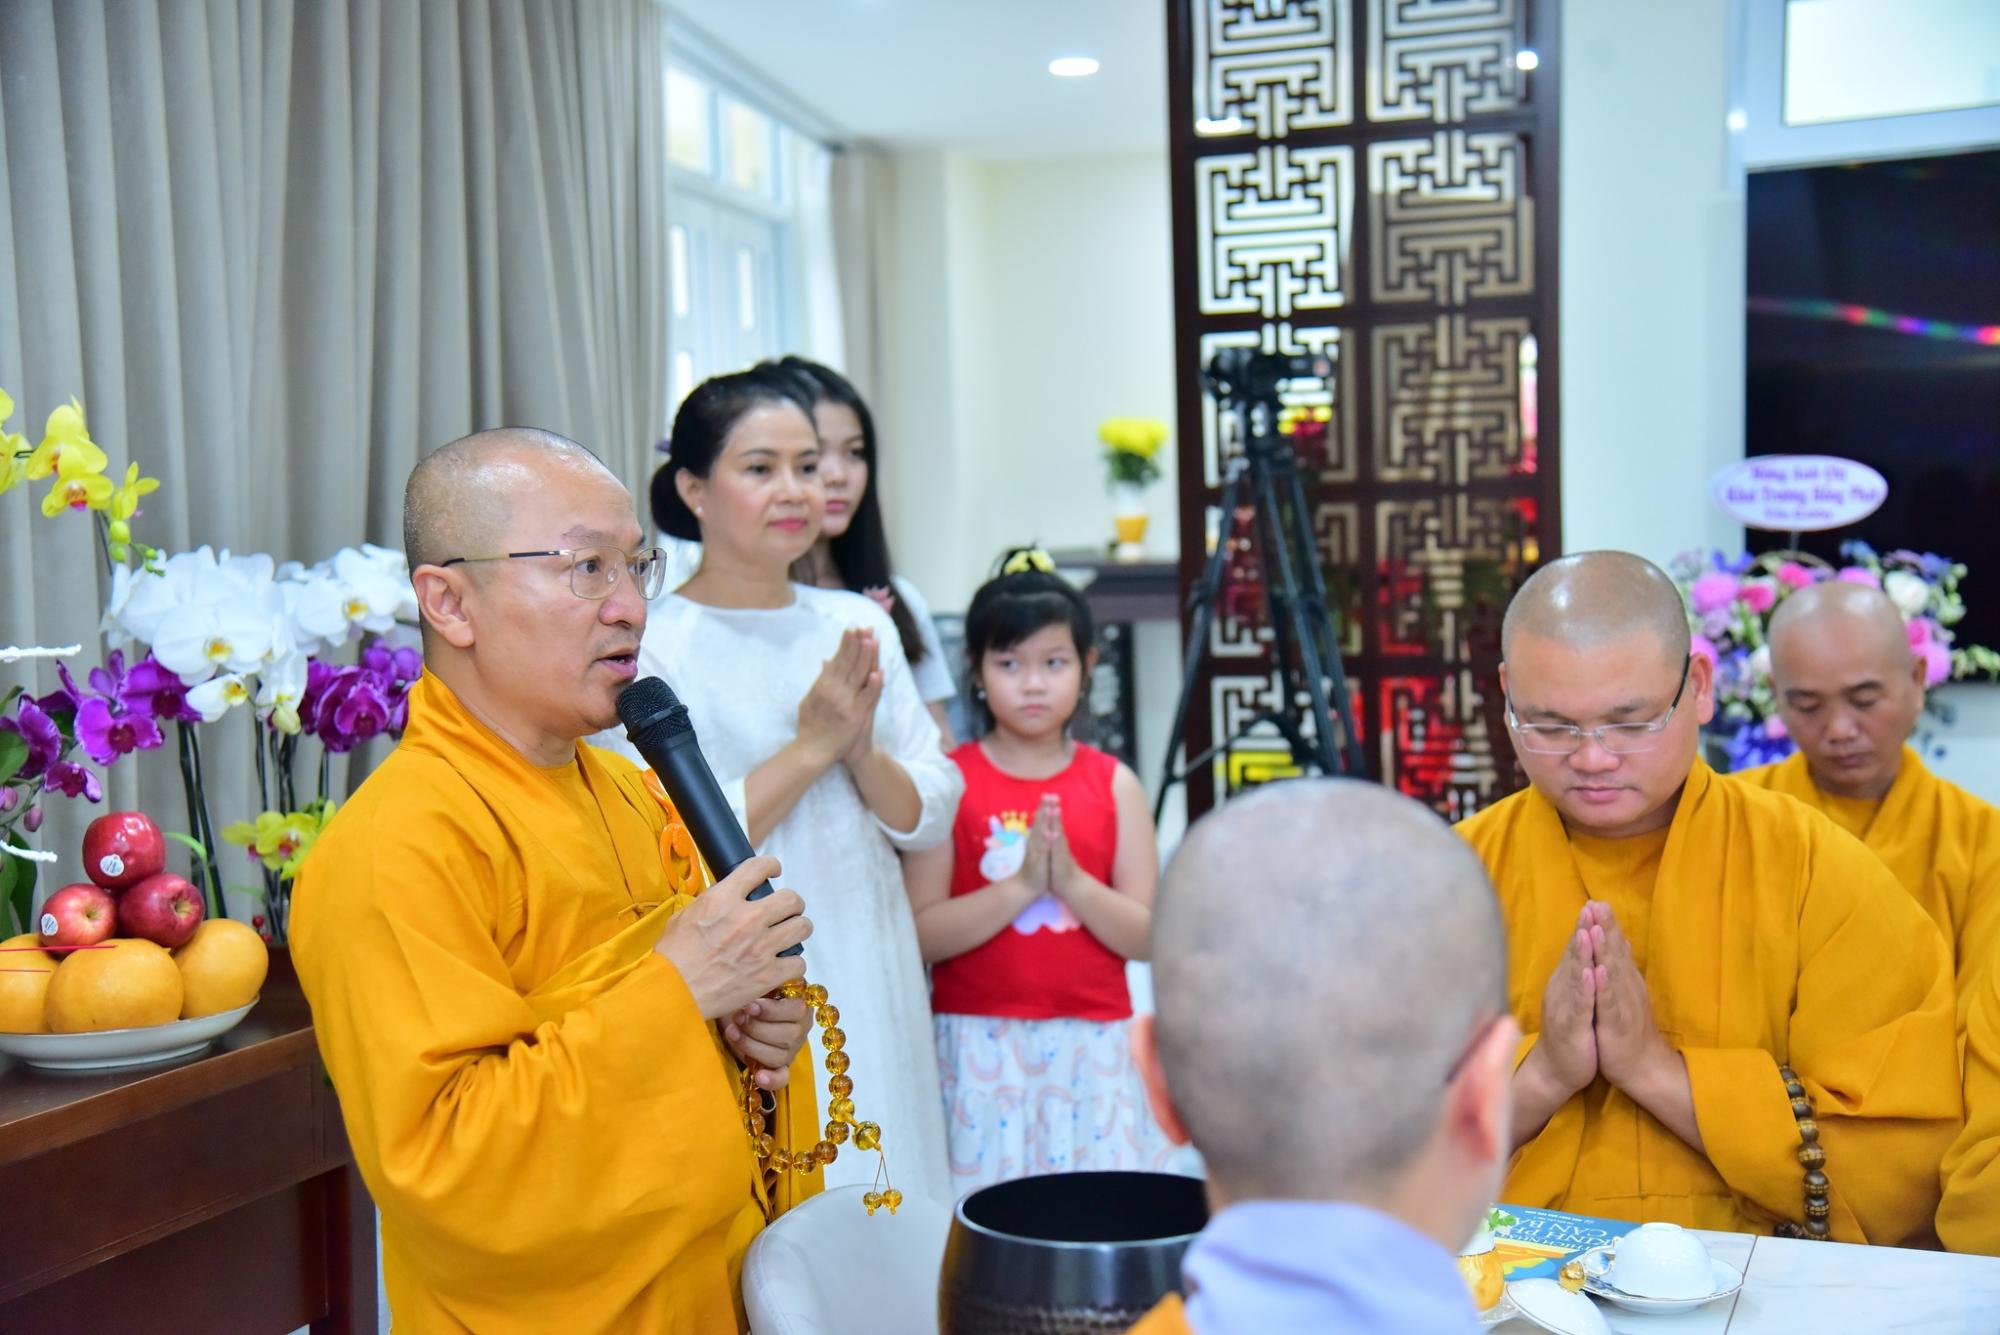 Tăng đoàn chùa Giác Ngộ an vị Phật hộ trì gia đình Phật tử